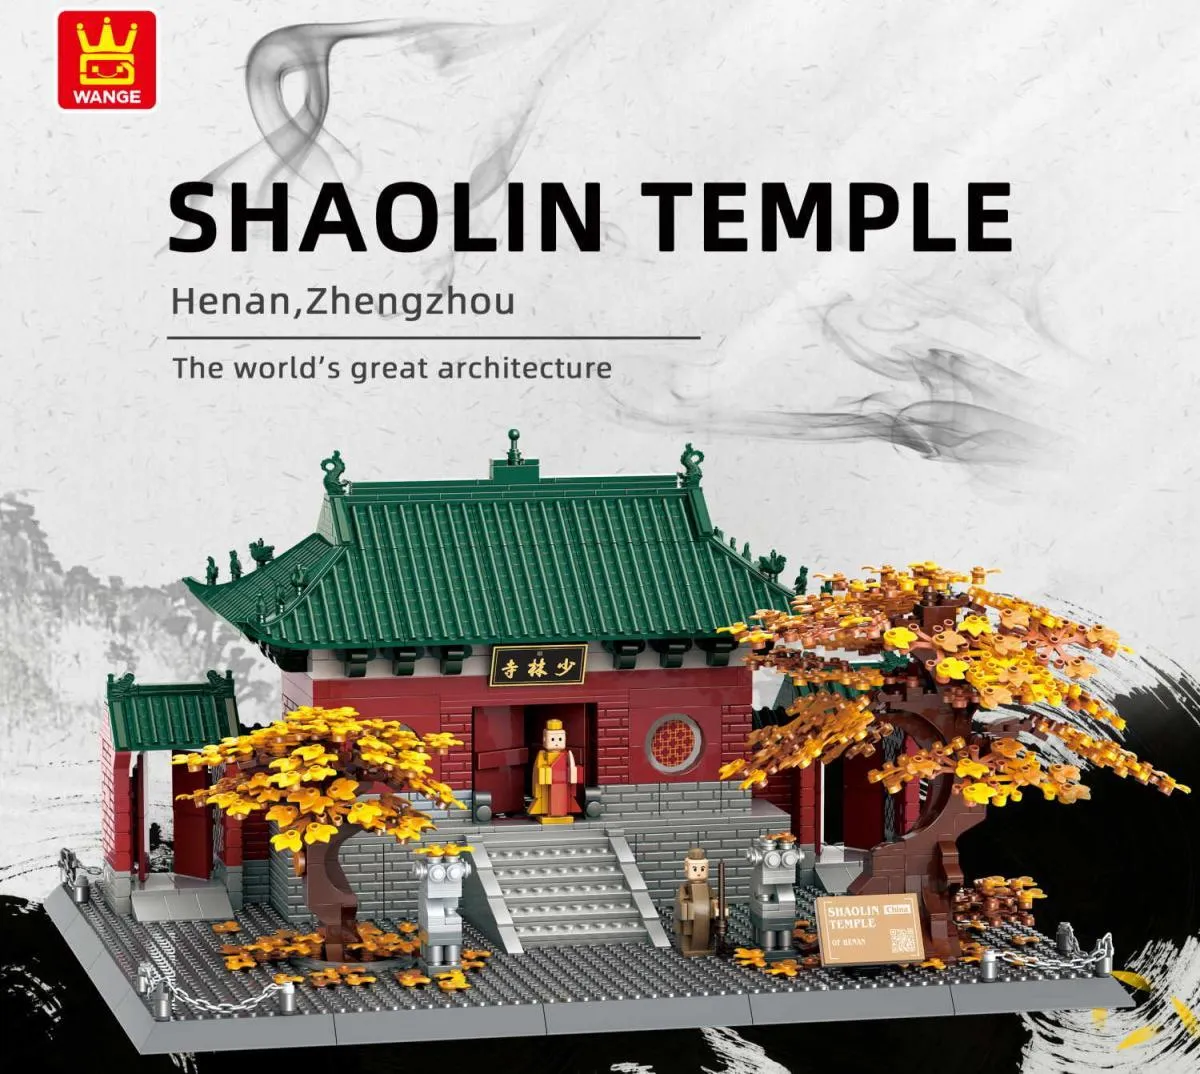 Shaolin Temple - Henan, Zhengzhou Gallery